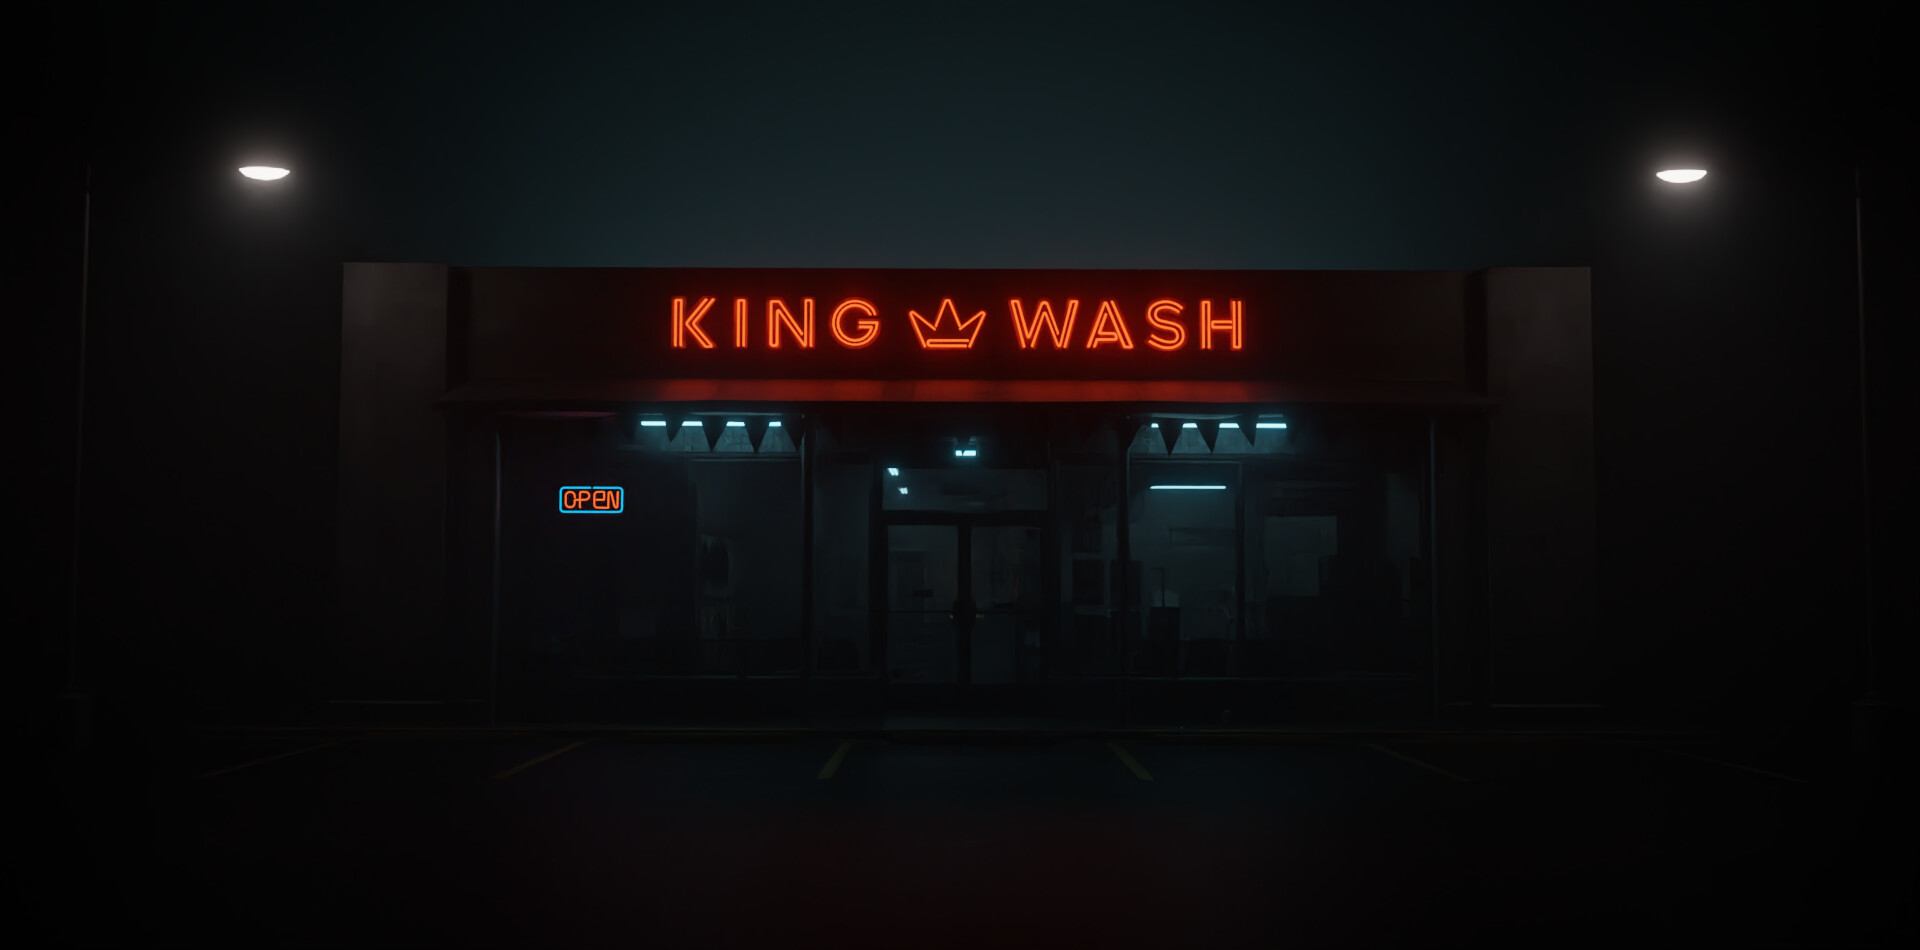 ArtStation - King Wash Laundromat- Blender